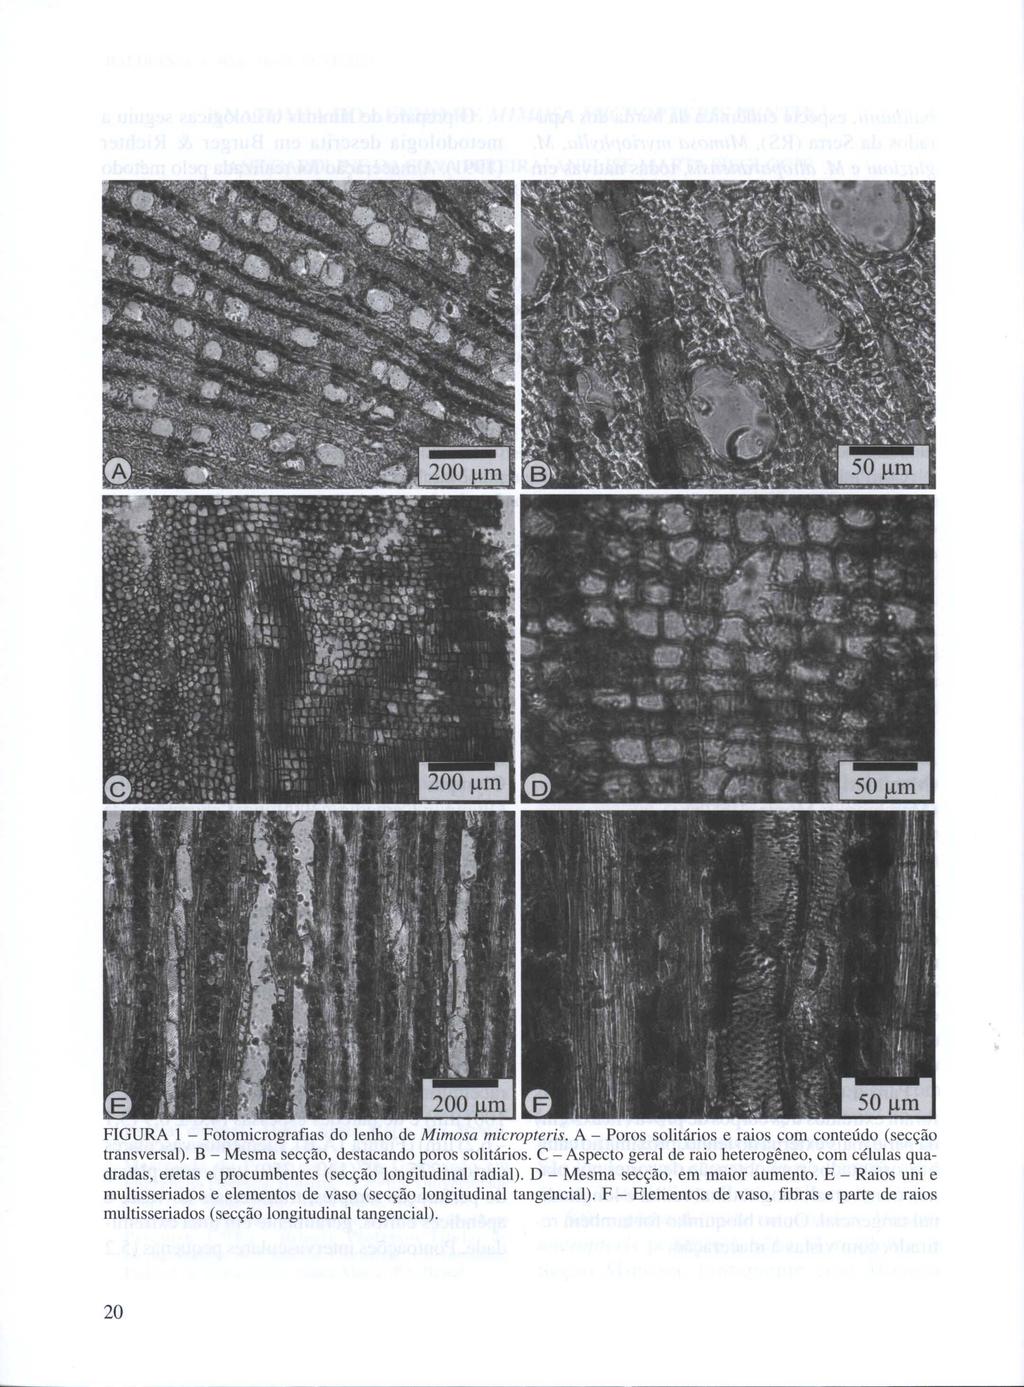 FIGURA 1 - Fotomicrografias do lenho de Mimosa micropteris. A - Poros solitários e raios com conteúdo (secção transversal). B - Mesma secção, destacando poros solitários.